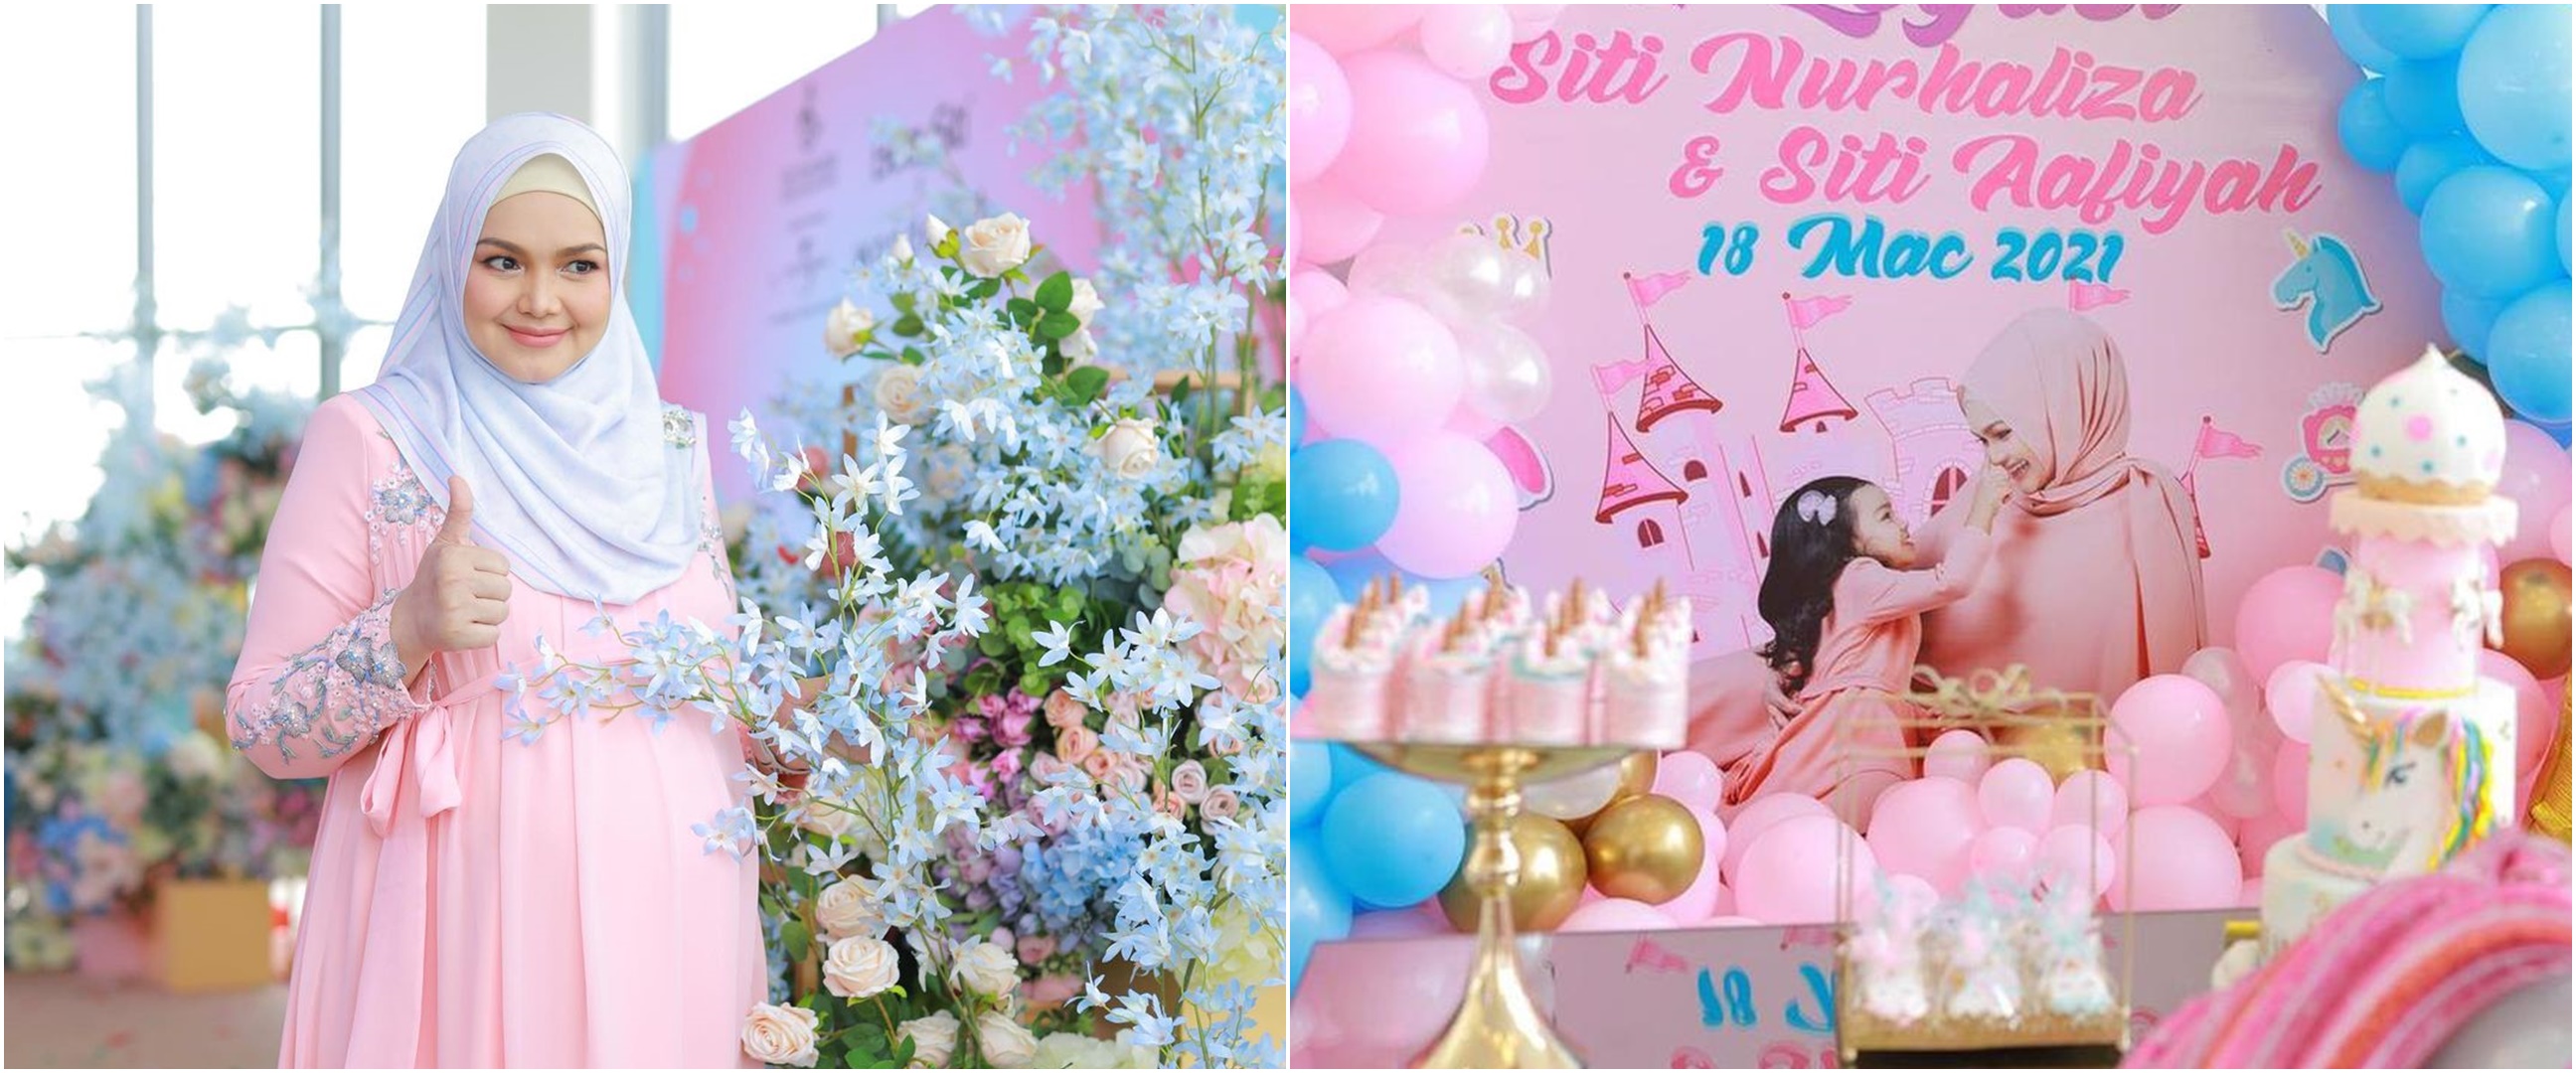 7 Momen Siti Nurhaliza rayakan ultah anak, rilis single & produk baru